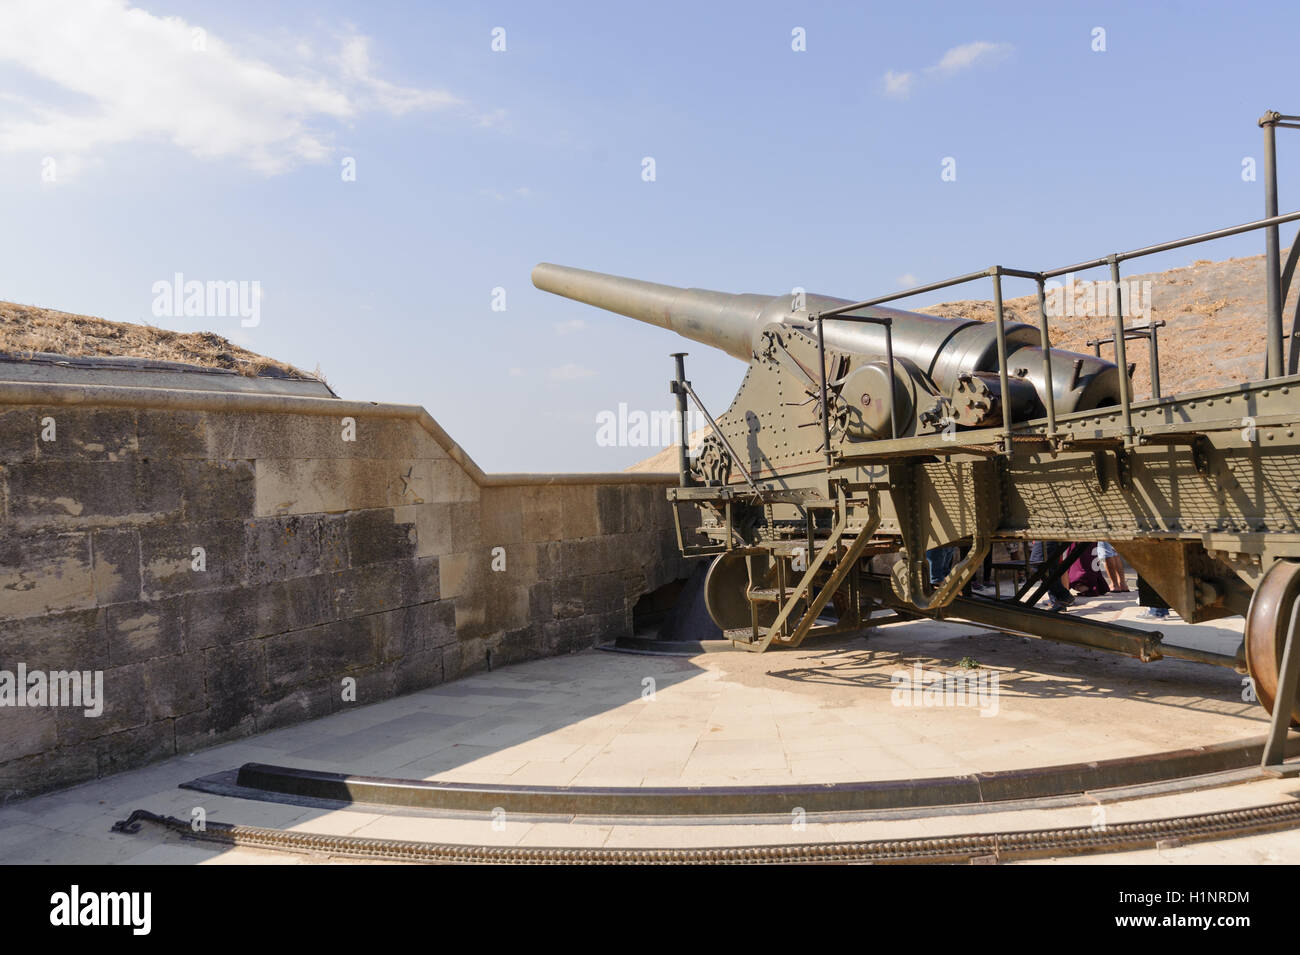 La mise en place fort Rumeli Mecidiye (turc) Tabya canon canon Krupp et dardanel perspective sur la mer. Ce coup de canon Ocea HMS Banque D'Images